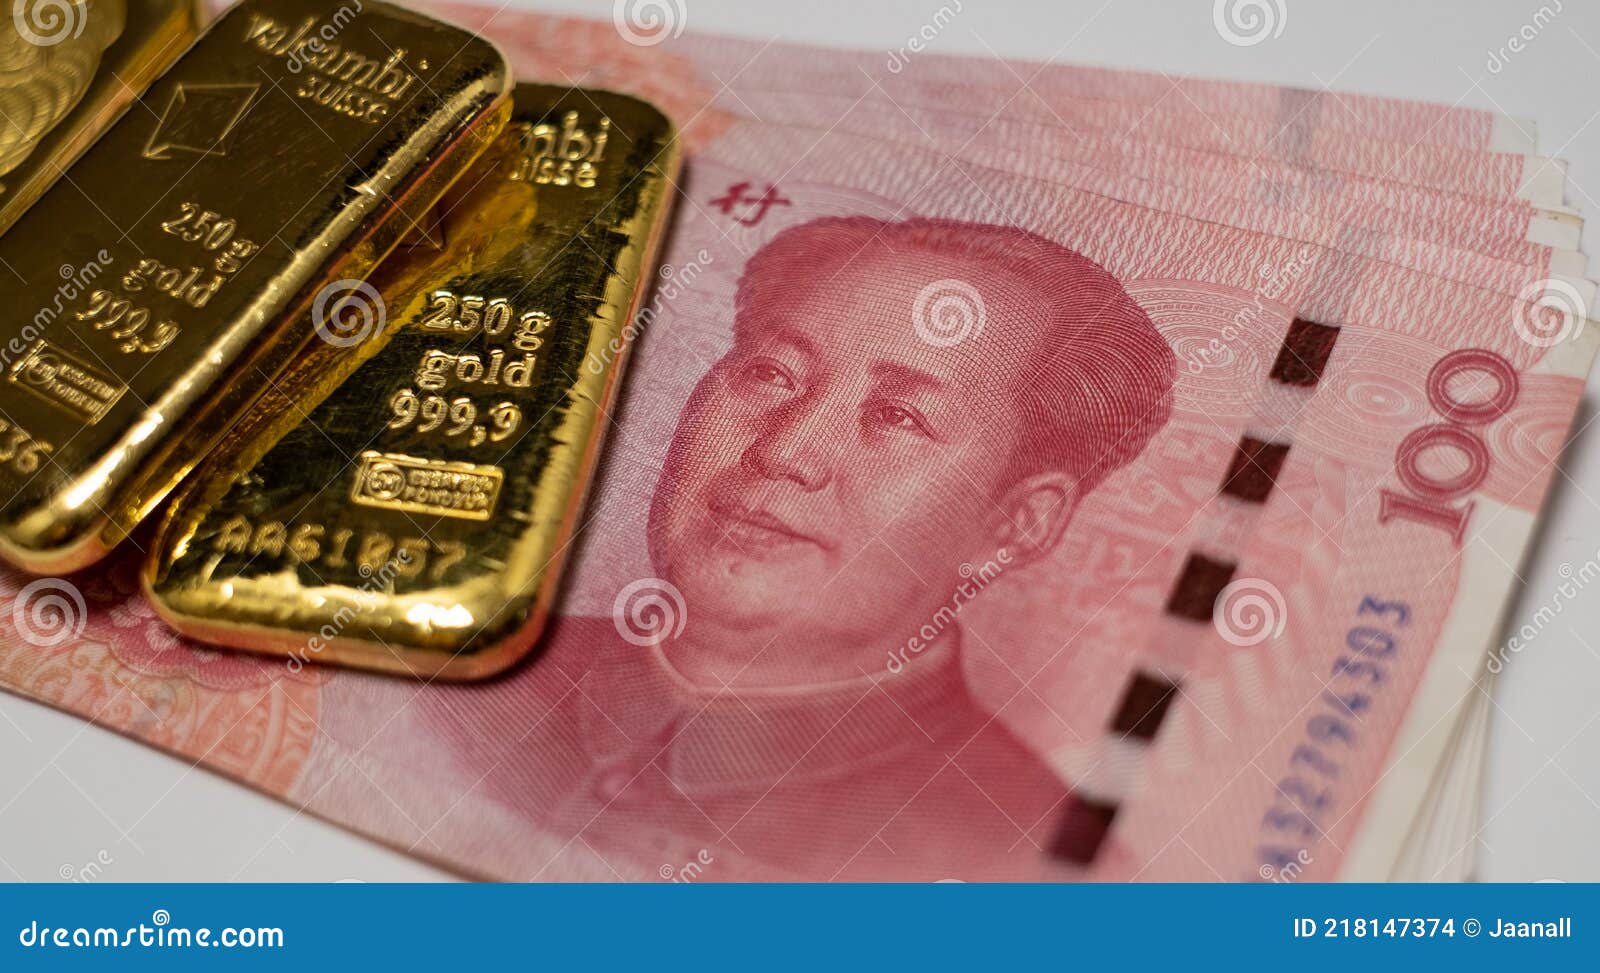 金条和人民币纸币. 中国银行储备金编辑类库存图片. 图片包括有费率